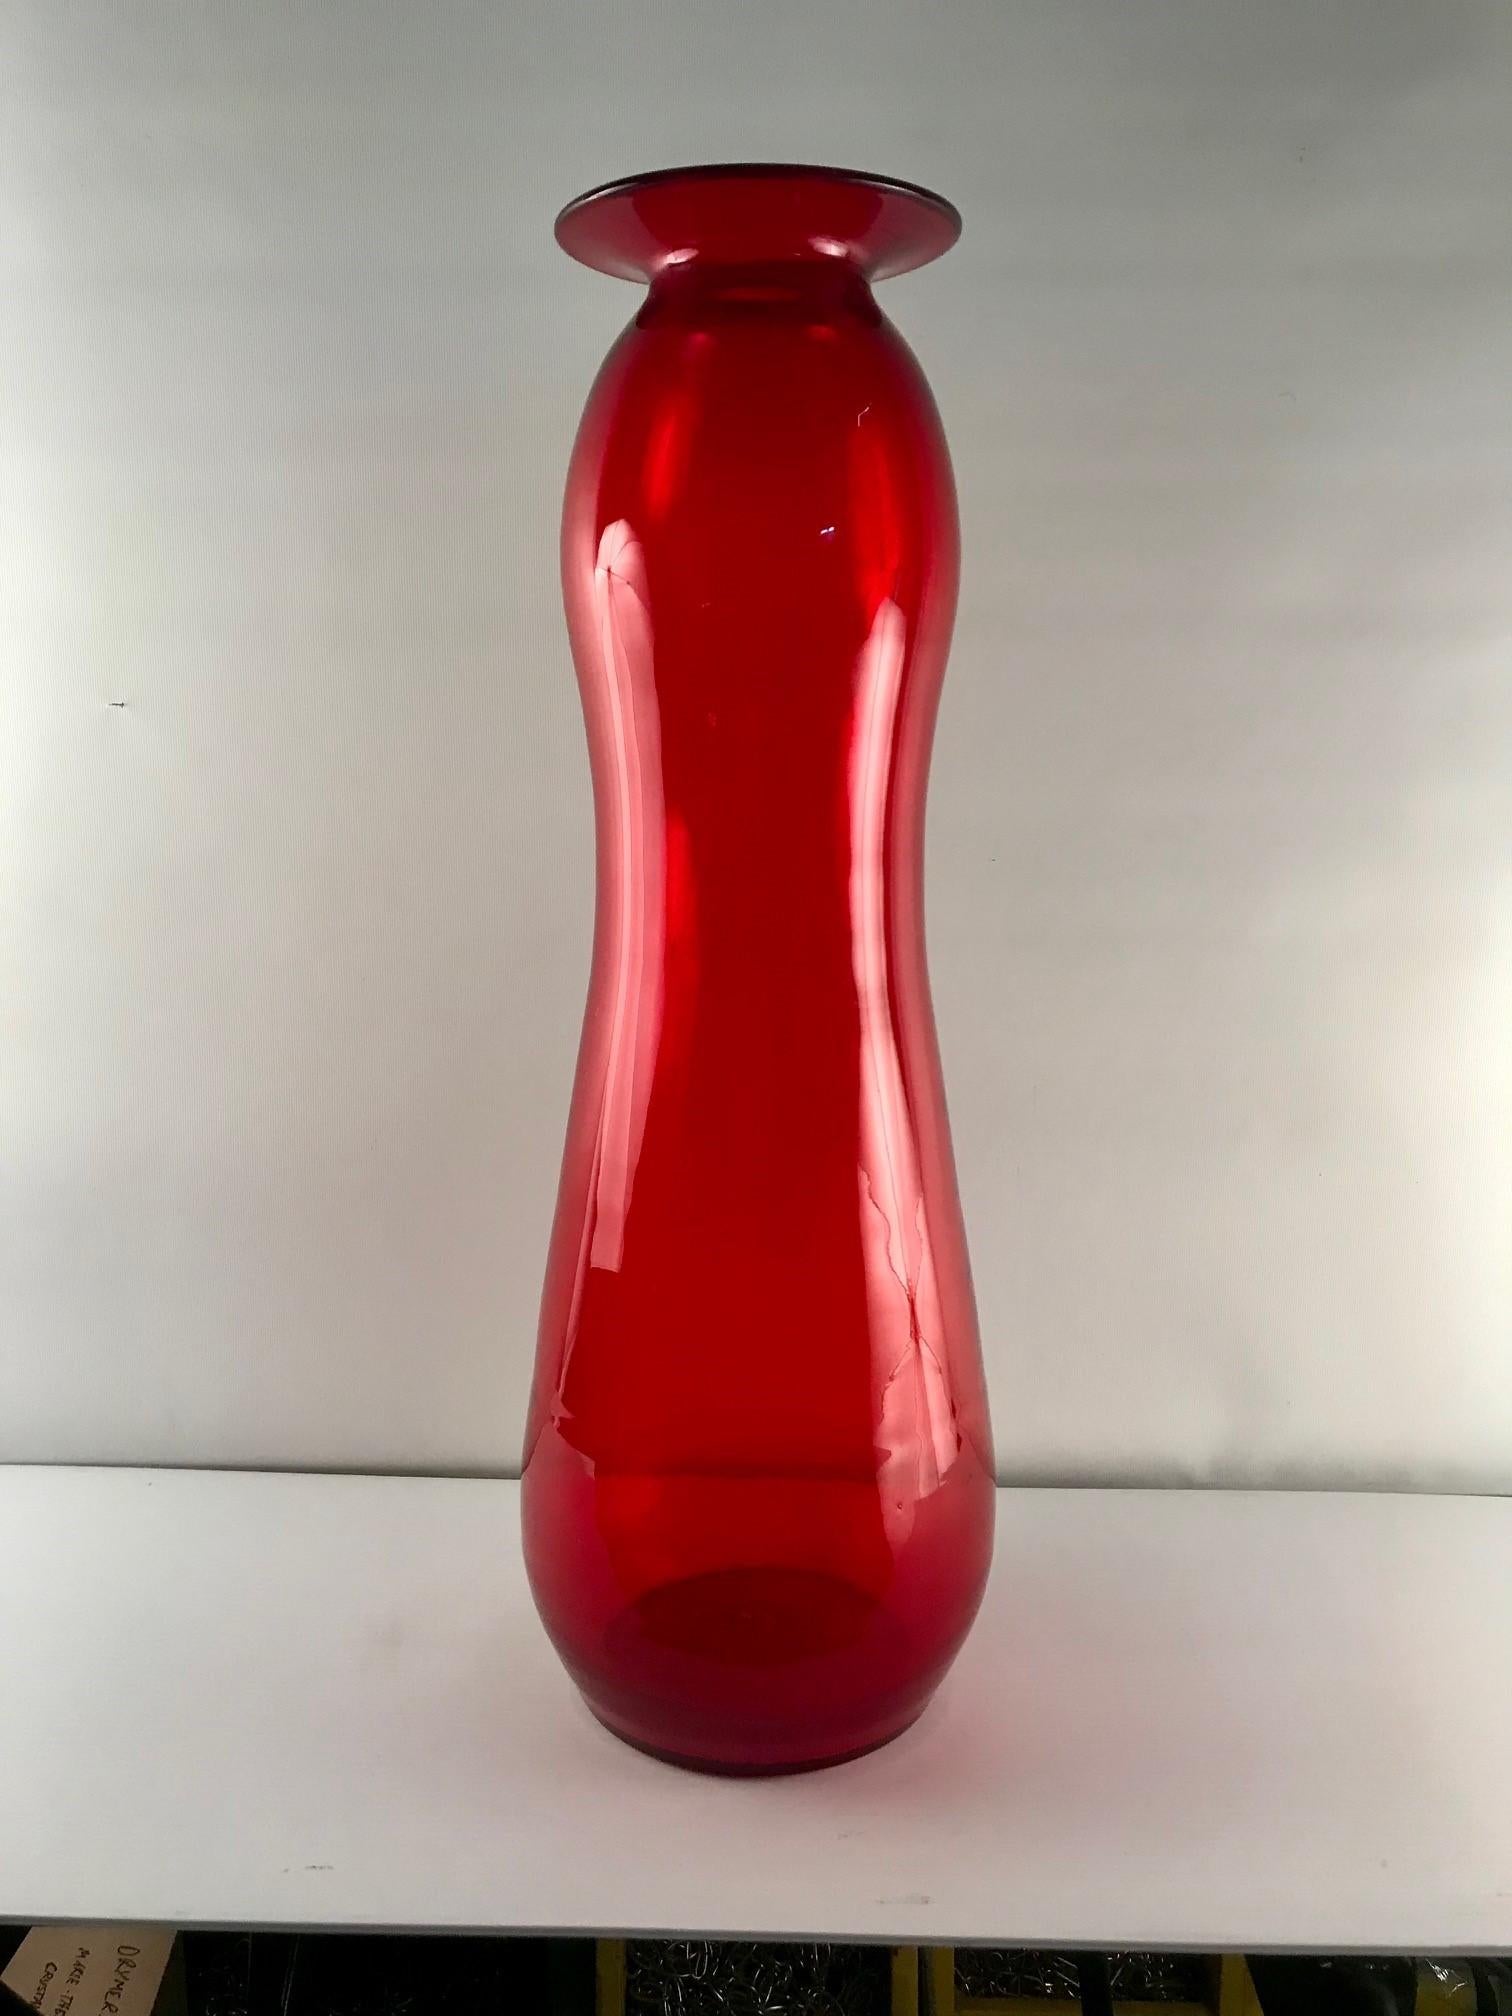 Diese kürbisförmige Vase hat eine sehr auffällige rote Farbe, ein leuchtendes und strahlendes Rot, in einer sehr länglichen Form. Diese aus einer Privatsammlung erworbene Vase war eines von mehreren hochwertigen Exemplaren und wurde Blenko